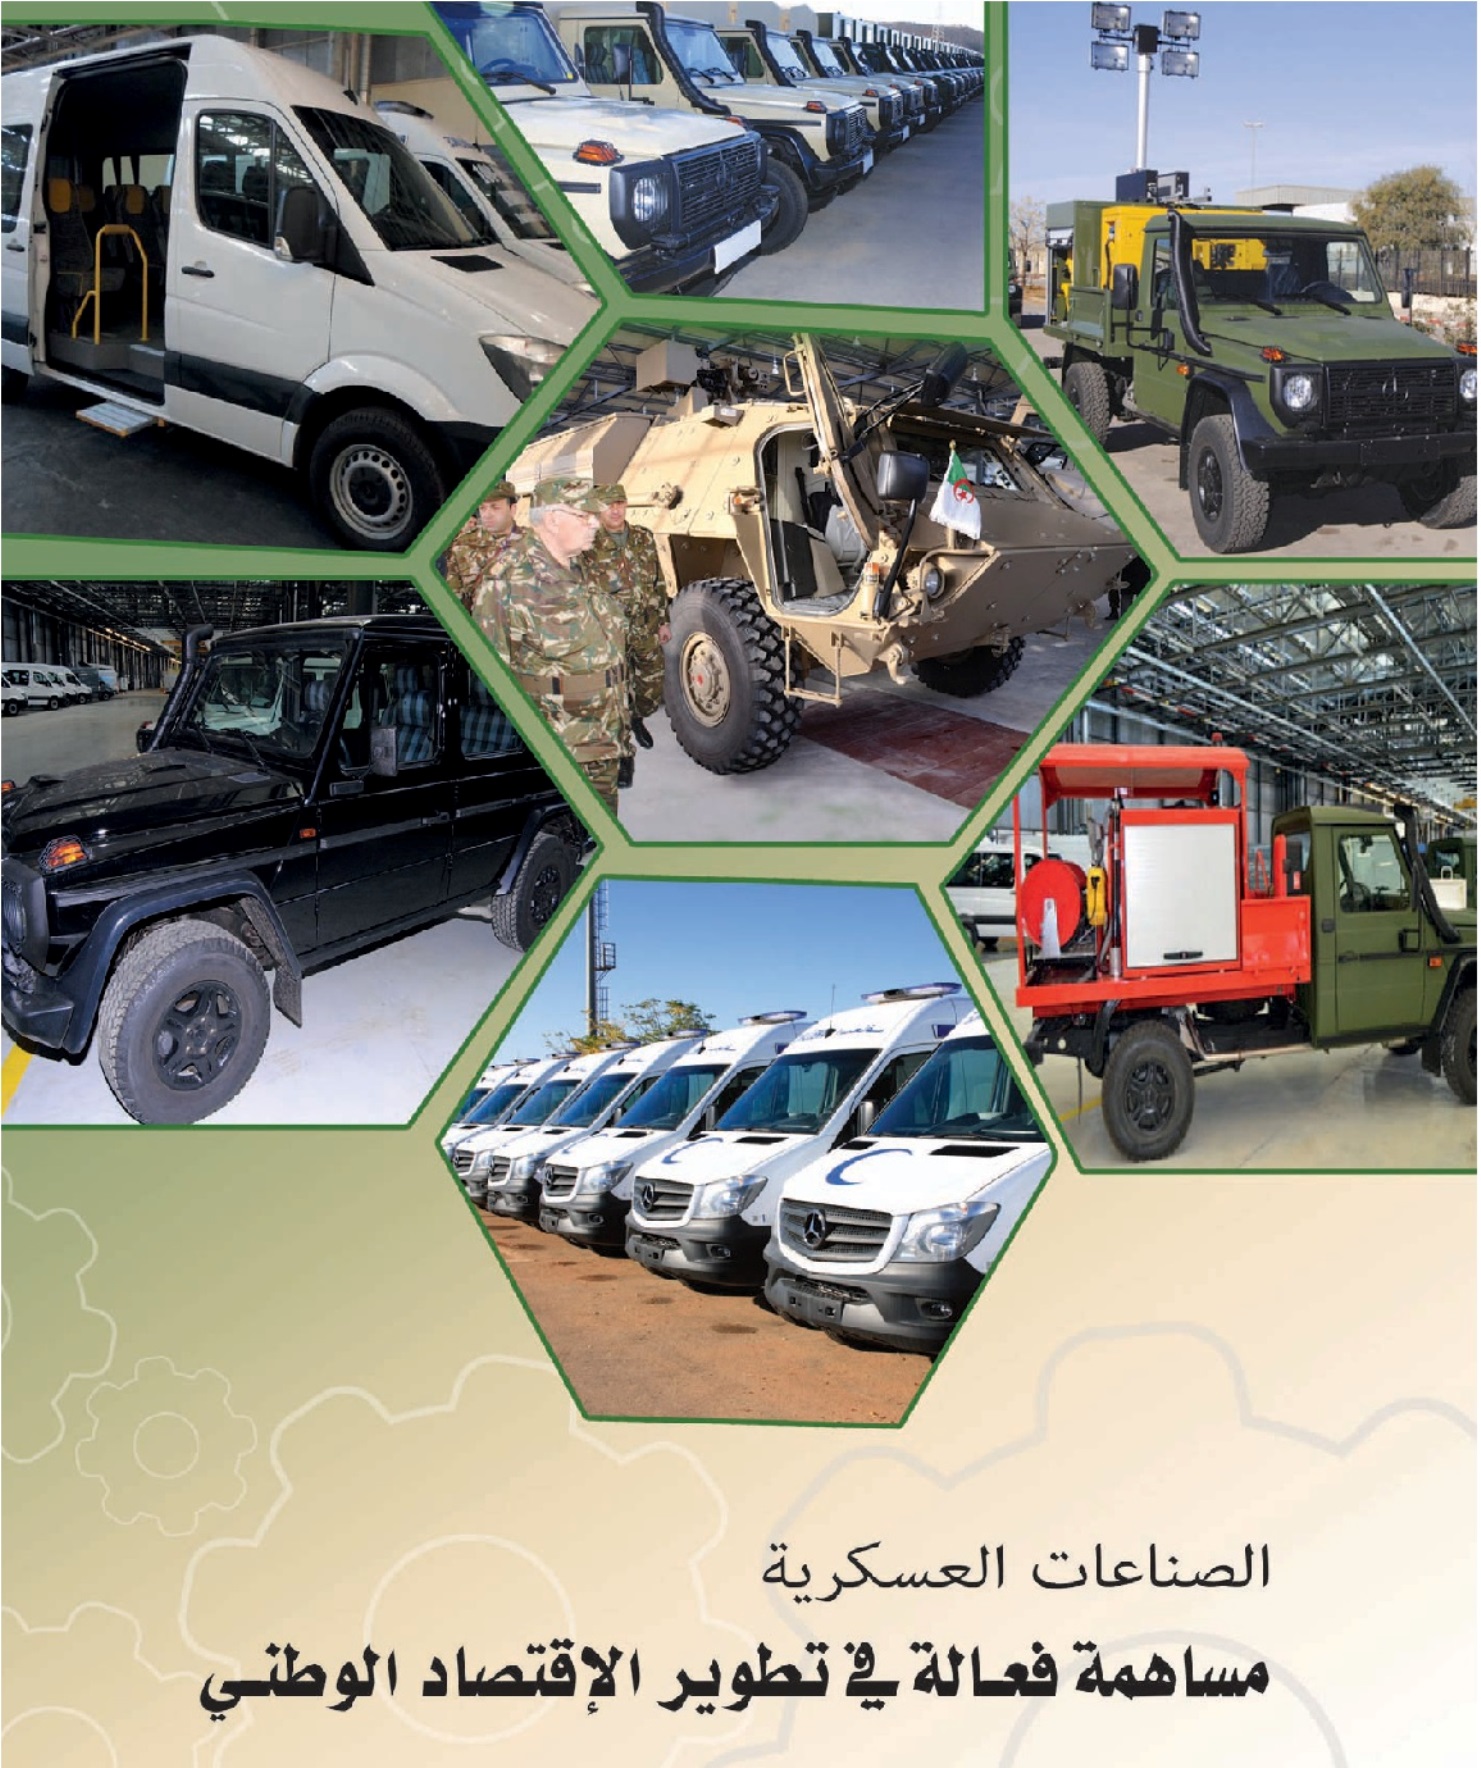 الصناعة العسكرية الجزائرية  علامة  ً مرسيدس بنز  ً - صفحة 14 32128515696_ec5ef5a4ed_o